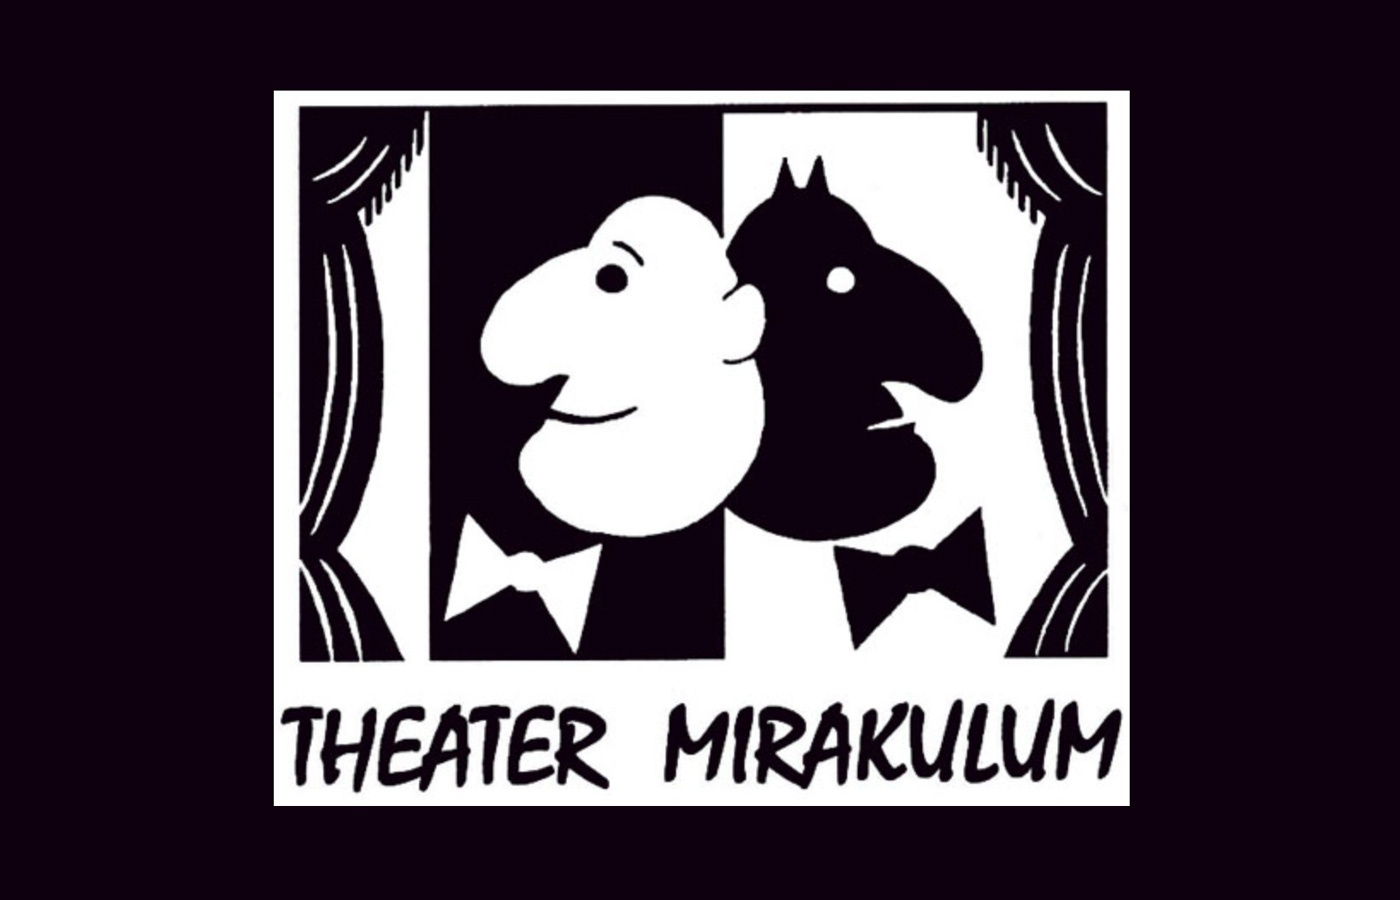 Pressearbeit Theater Miraklulum